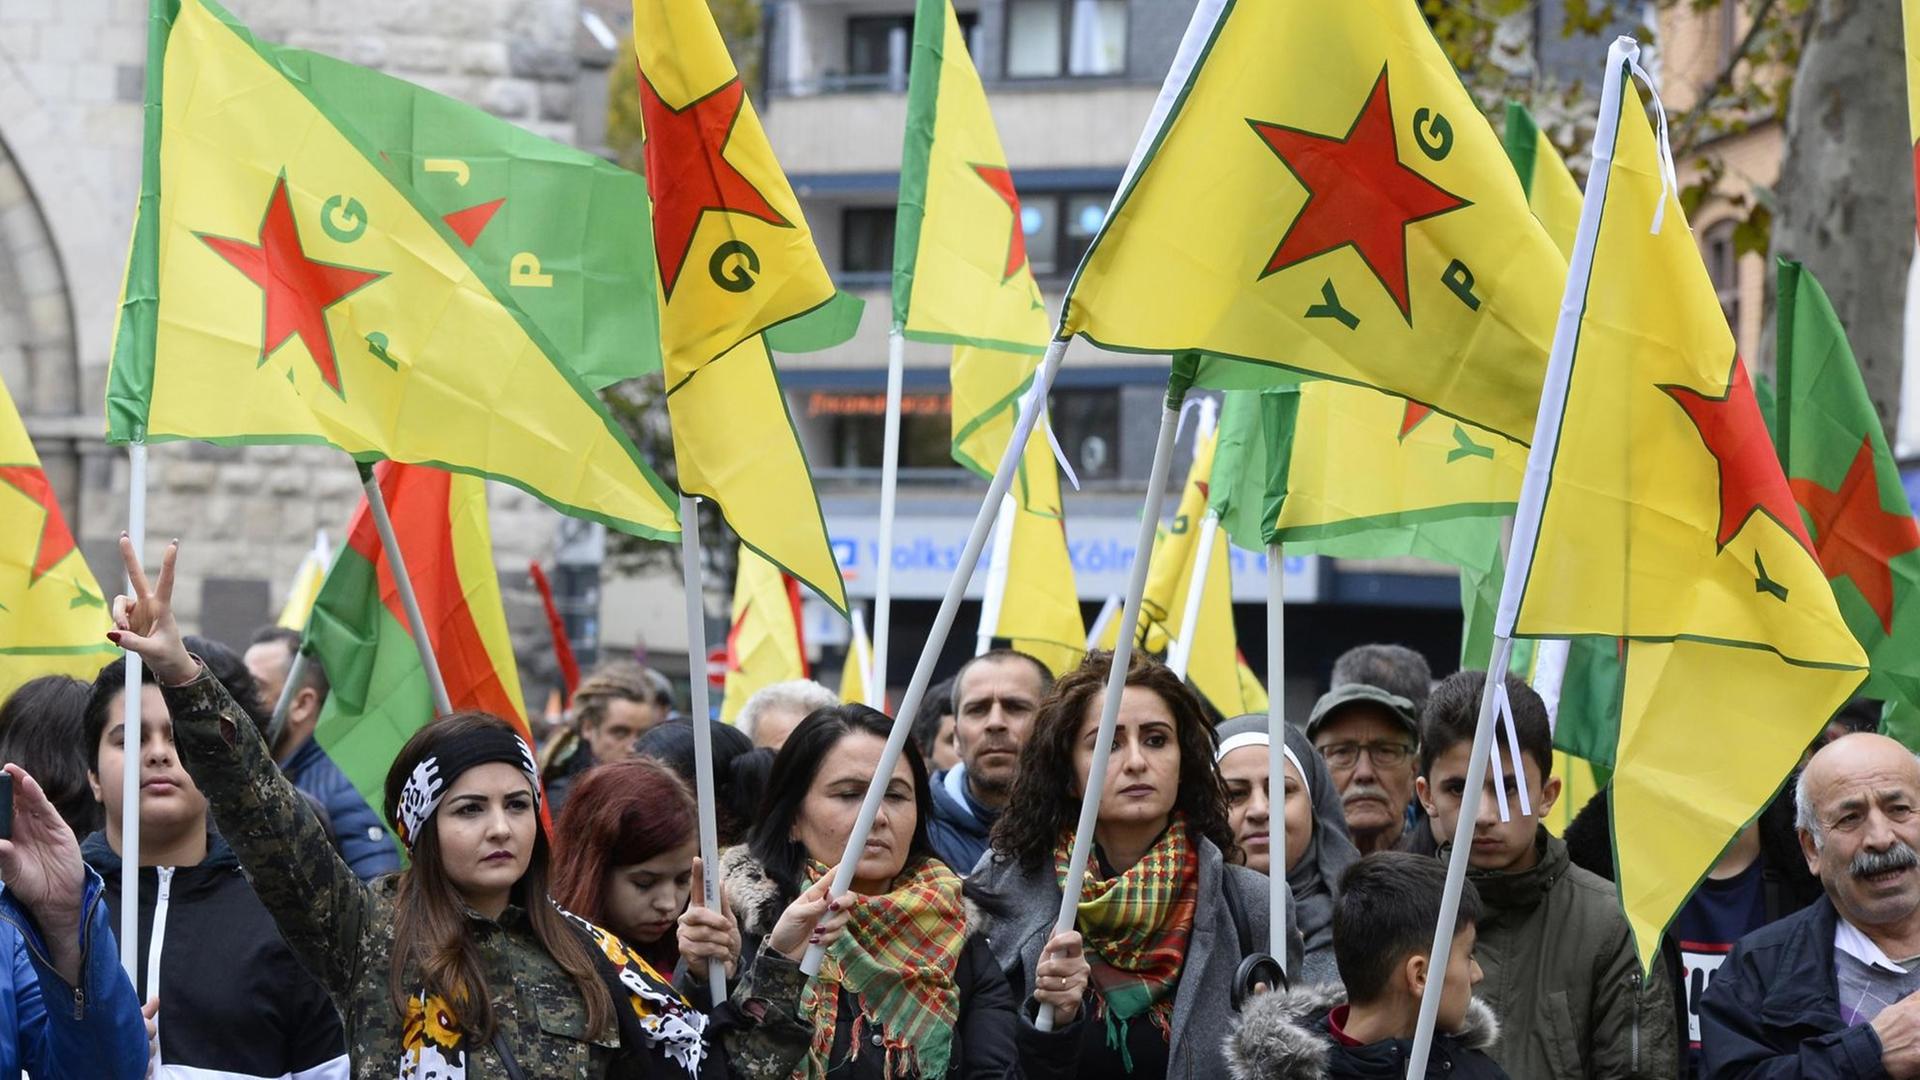 Demonstranten halten YPG-Fahnen bei einer Demonstration von Kurden gegen die türkische Militär-Offensive in Nordsyrien in Köln am 19.10.2019.